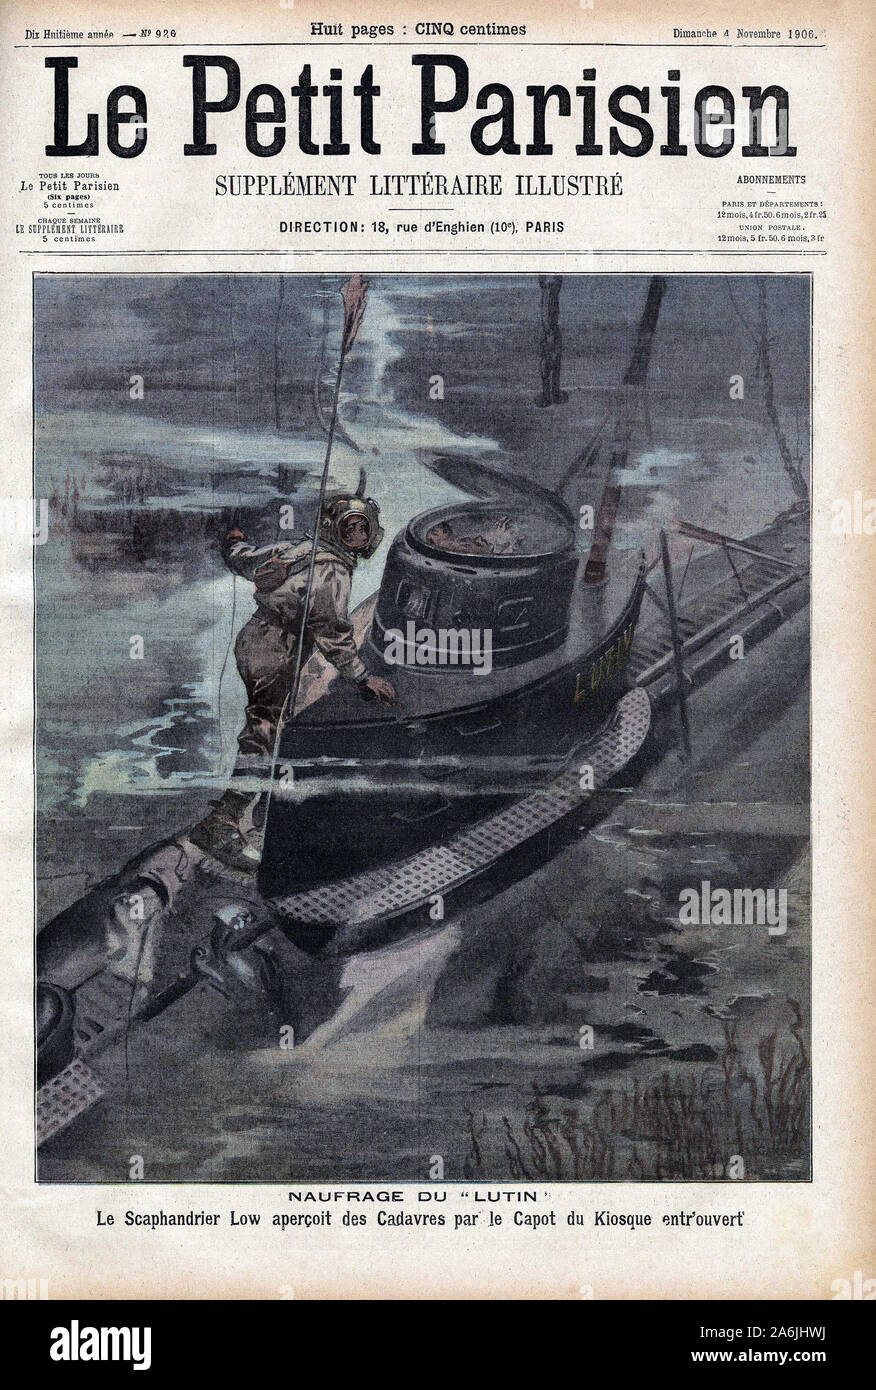 Un scaphandrier retrouve le sous marin 'Le Lutin' dans le lac de Bizerte, coule par voie d'eau le 16 octobre 1906, entrainant la mort de 14 marins et Stock Photo